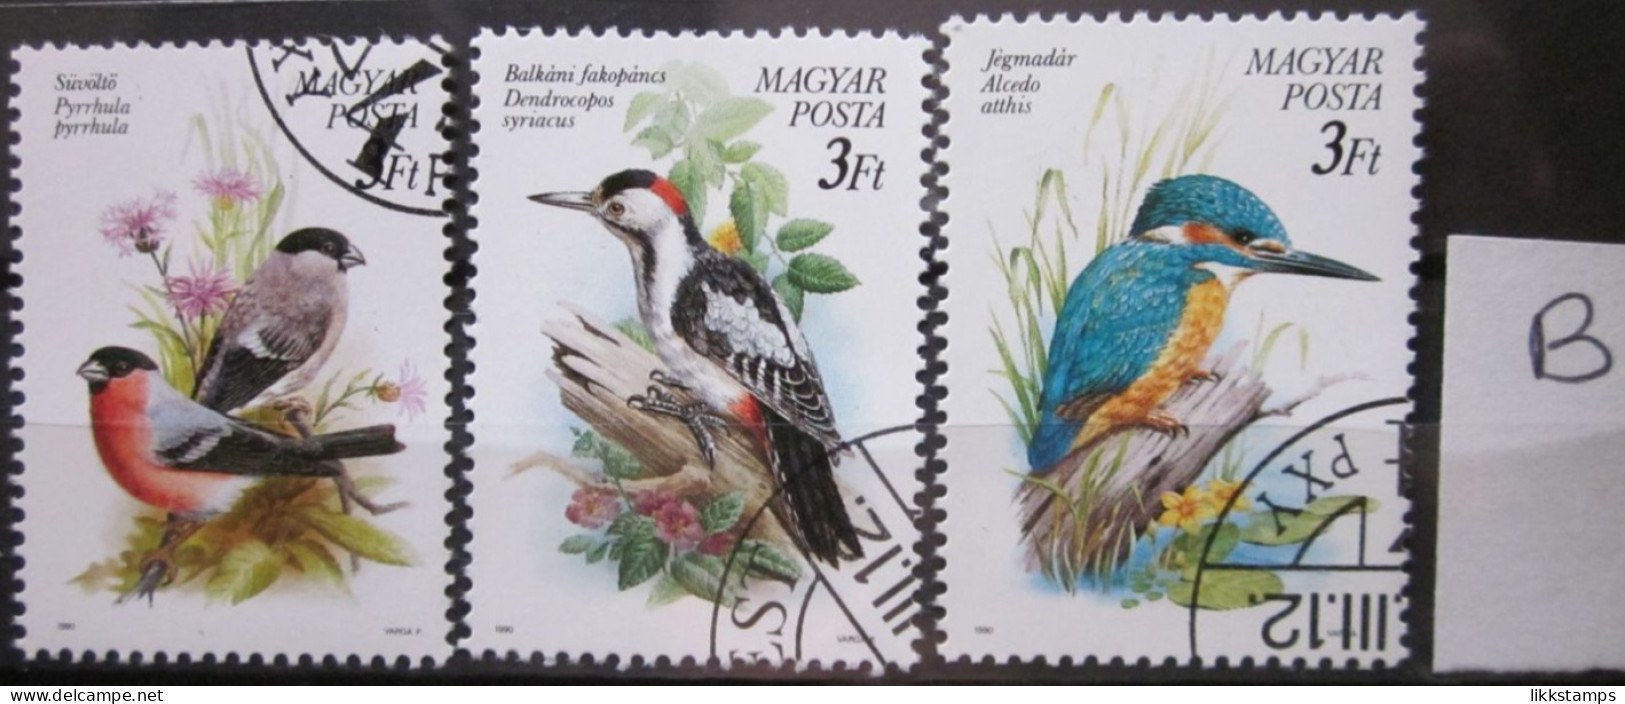 HUNGARY ~ 1990 ~ S.G. NUMBERS 3960 - 3962, ~ 'LOT B' ~ BIRDS. ~ VFU #02795 - Oblitérés